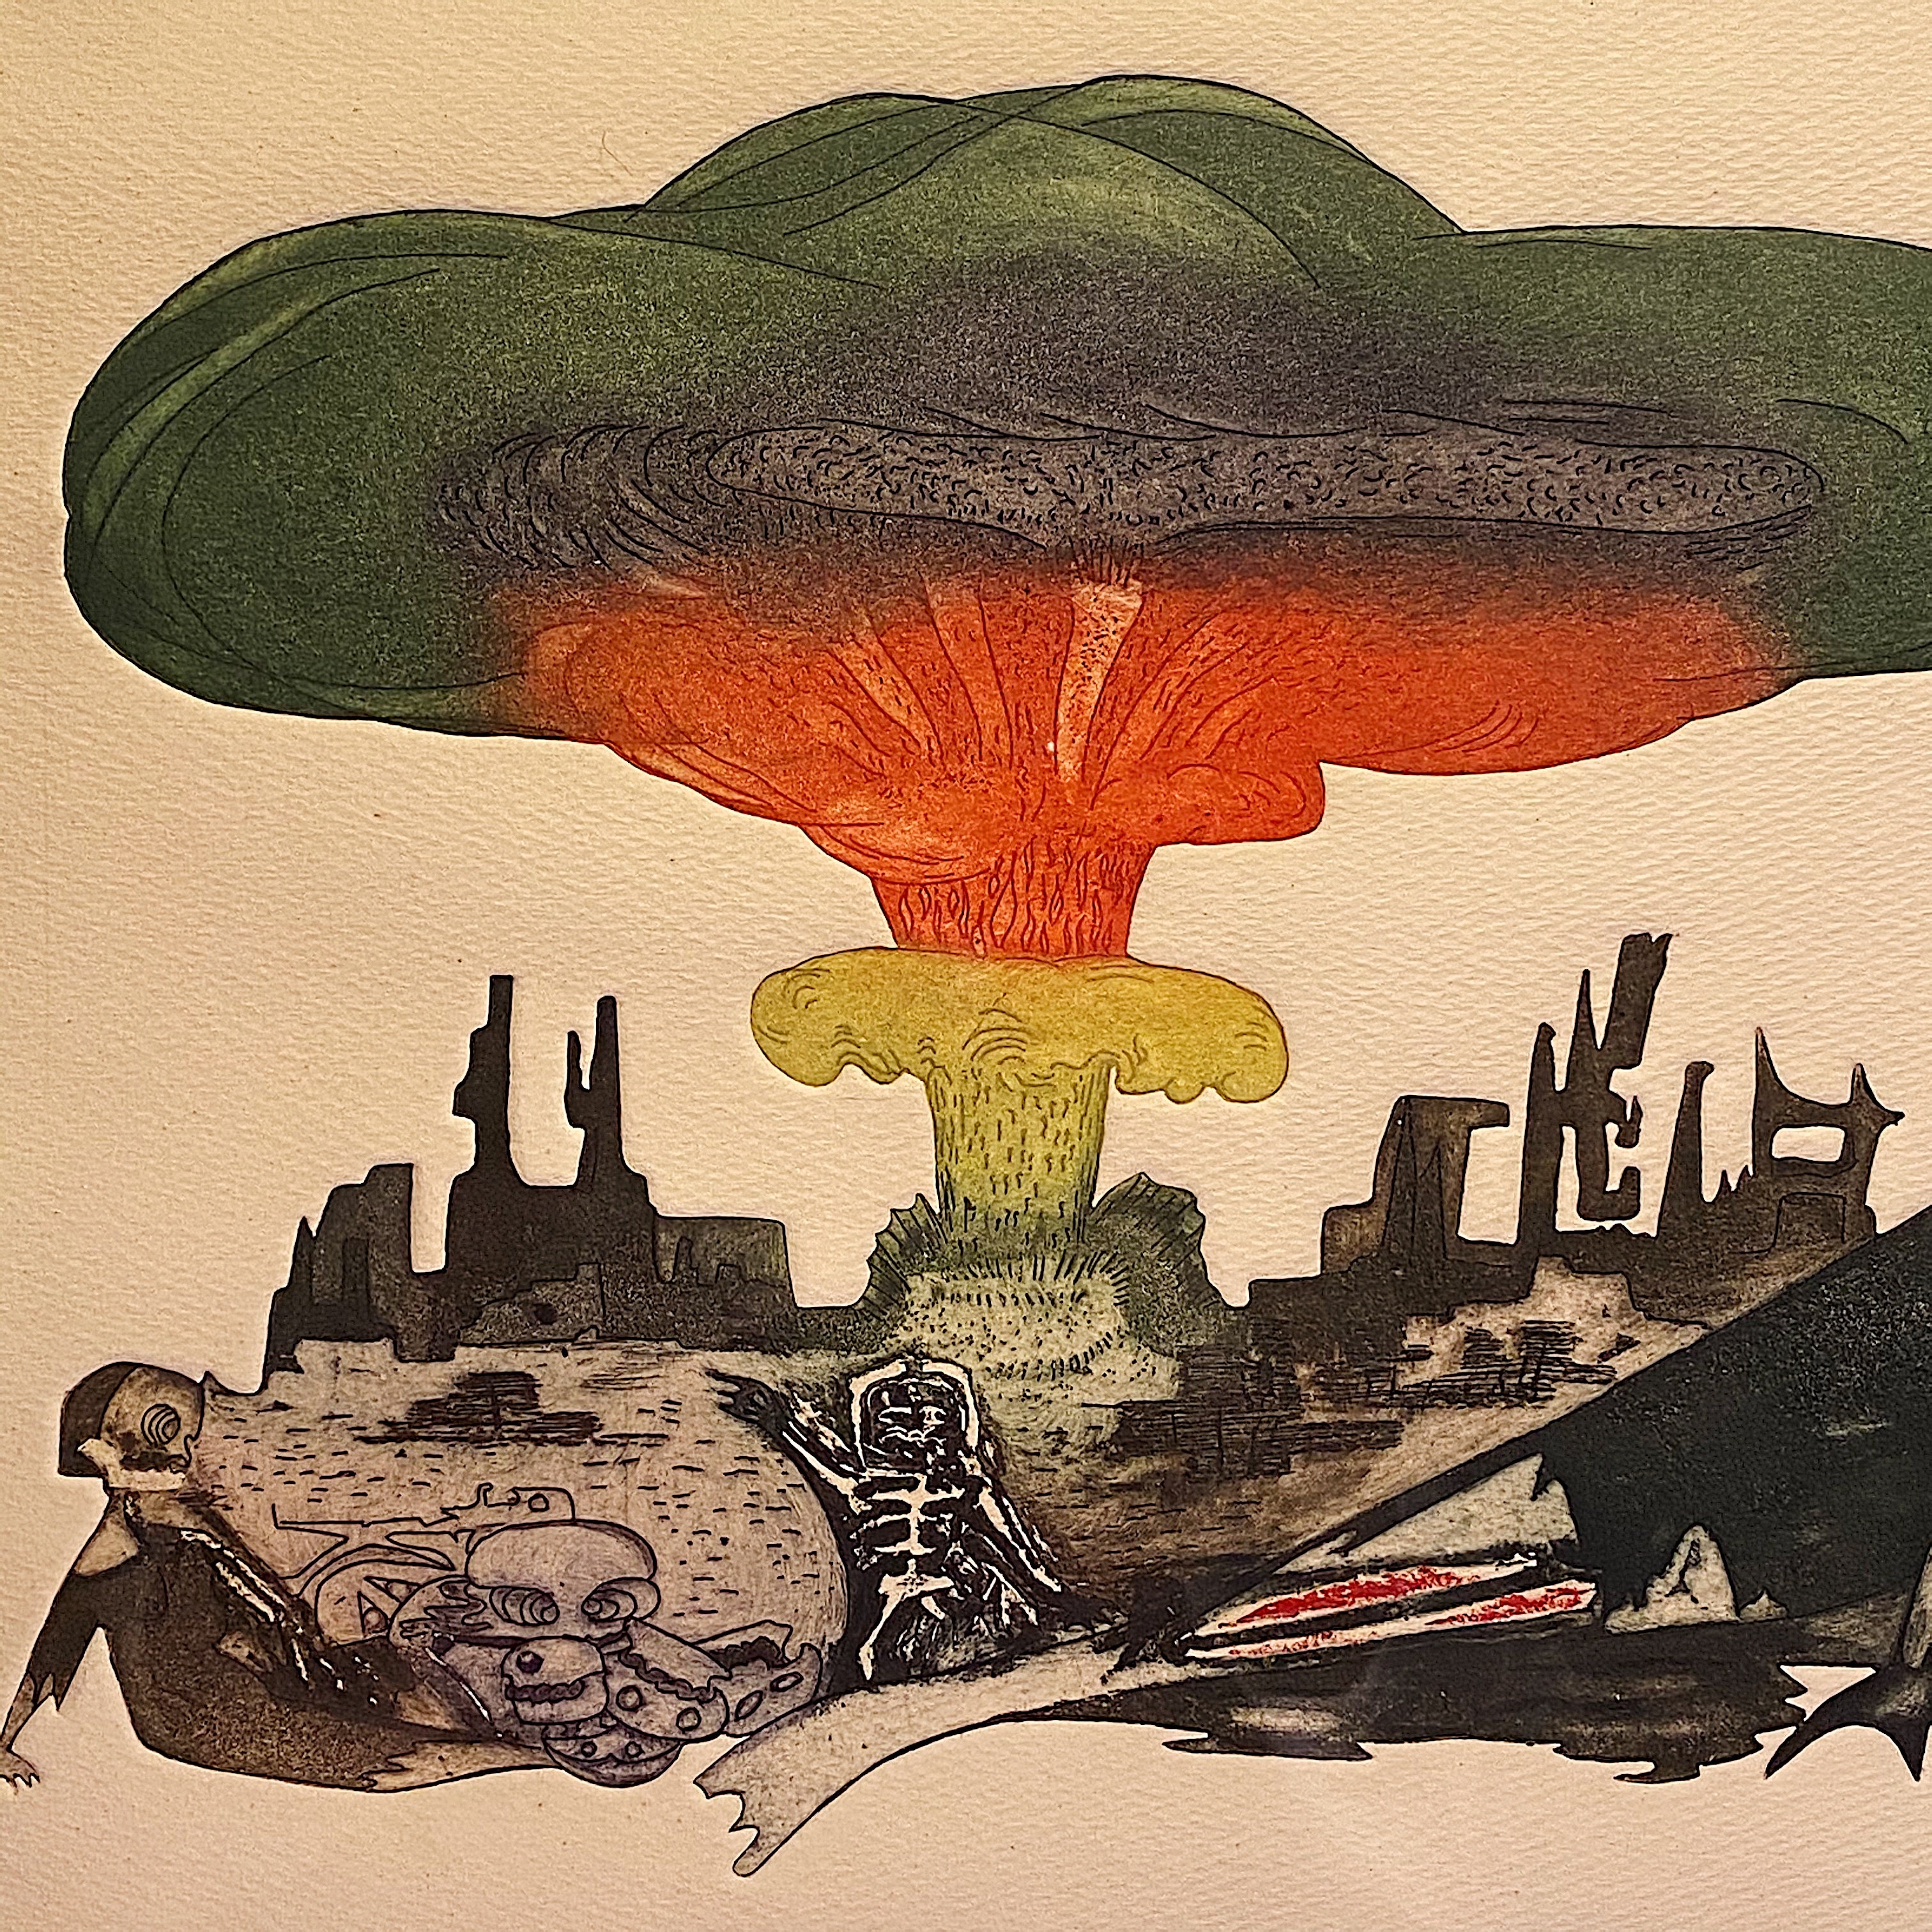 Nuclear Guillermo Silva Santamaria Engraving in Color from 1960 -  Ahora Hay Para Todos - Surreal Scene - Apocalyptic Vision - Rare Surrealist Art